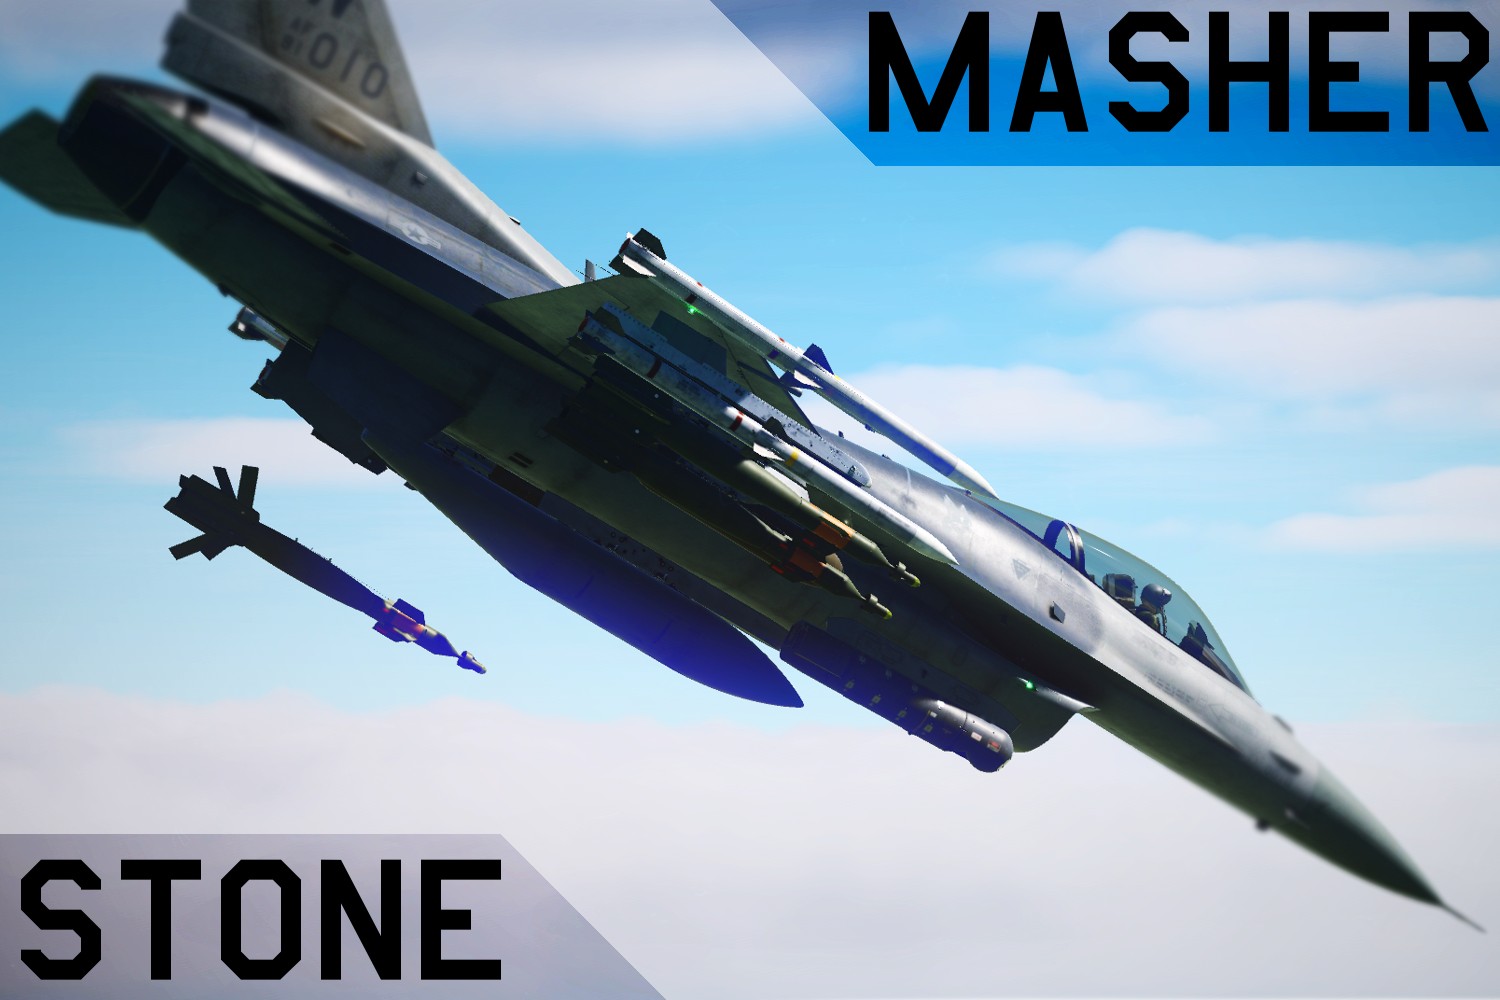 F-16C: Operation Stone Masher